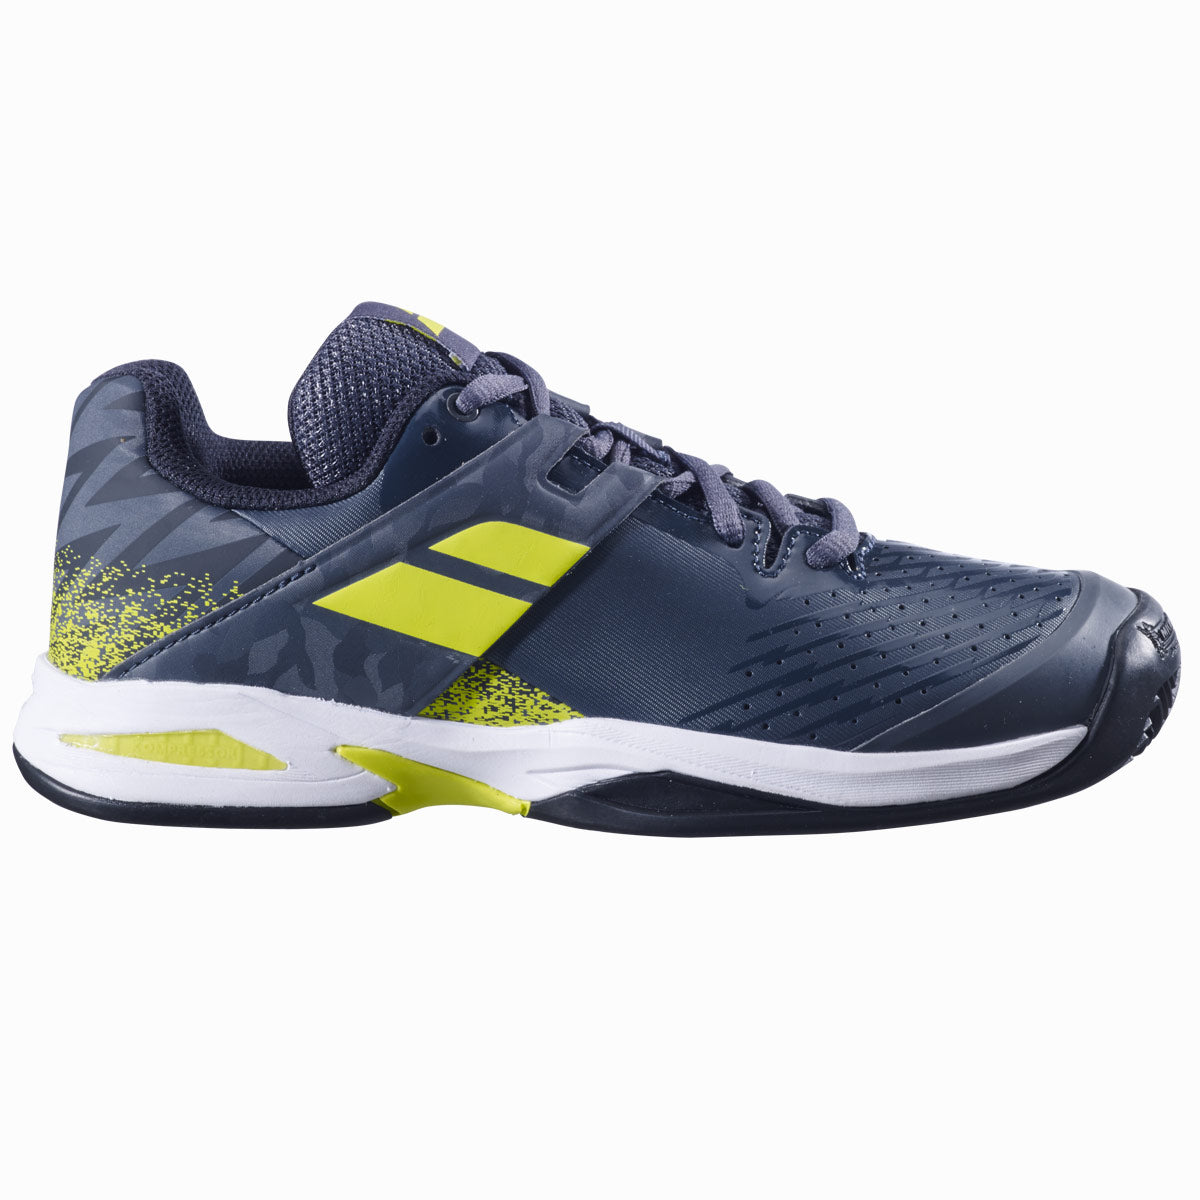 Babolat Propulse Clay Court Tennis Shoes (Junior) - Grey/Aero